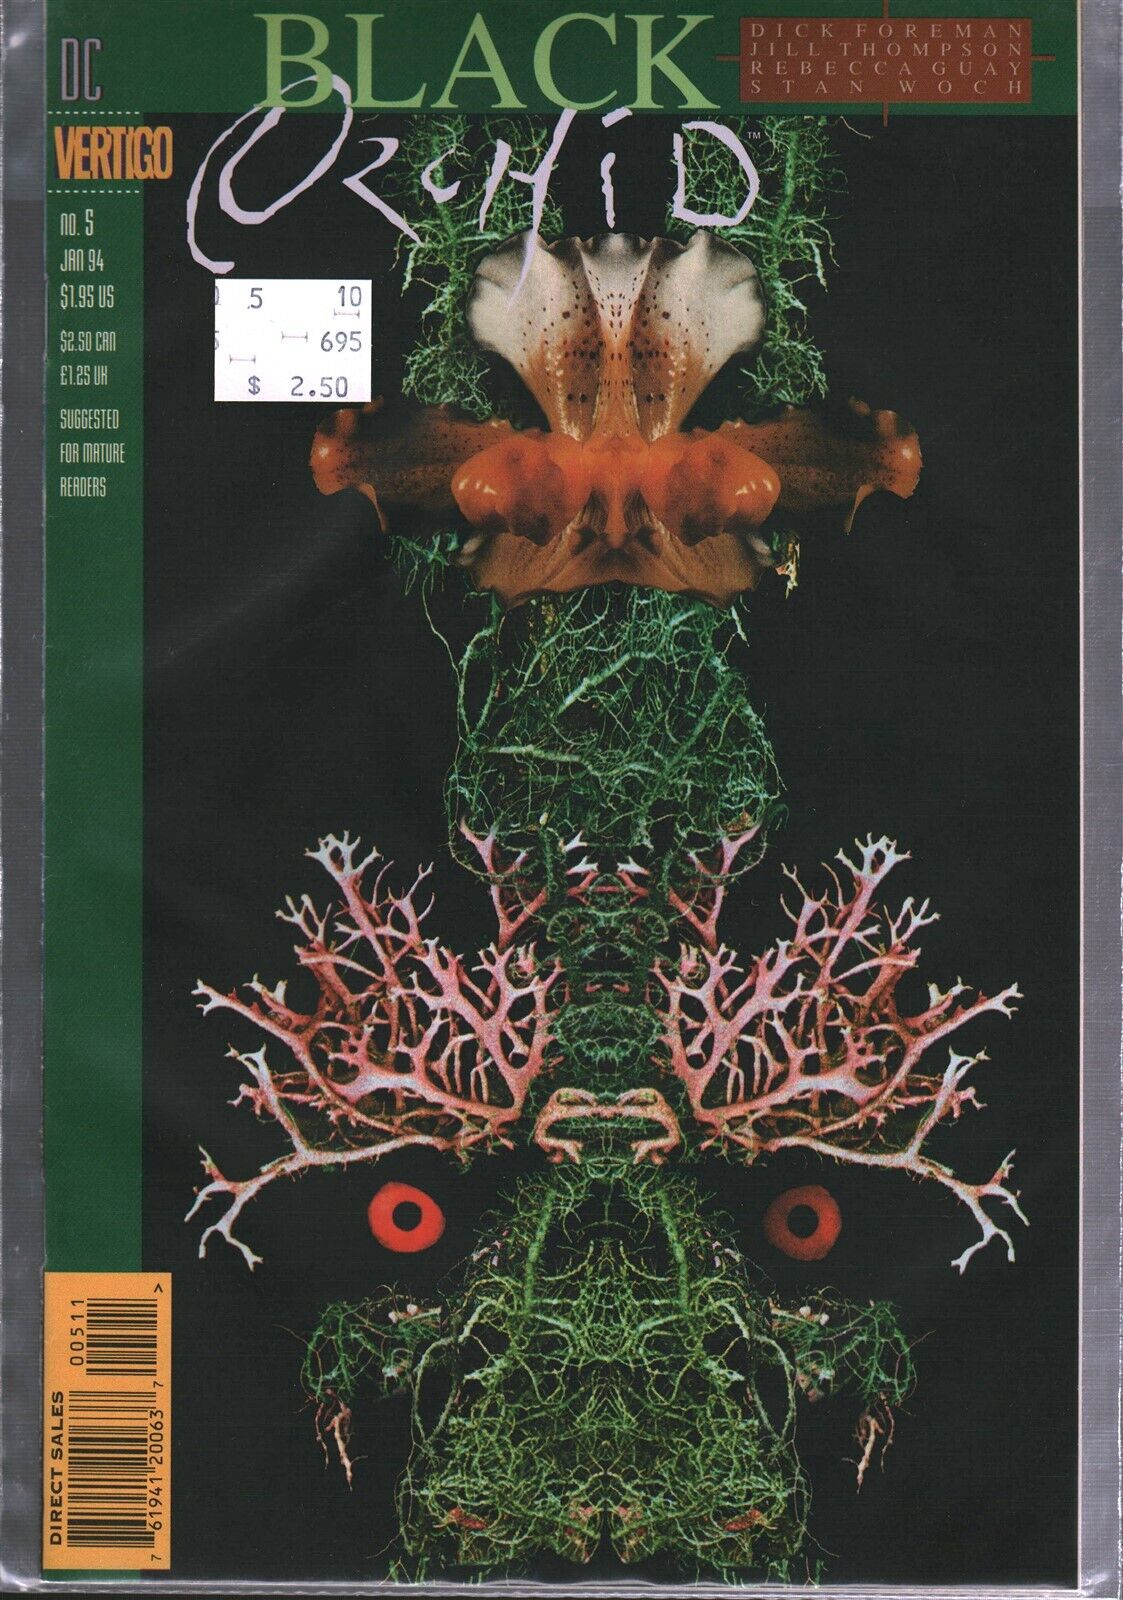 Vertigo/DC Comics Black Orchid Comic Book Issue #5 (1994) High Grade